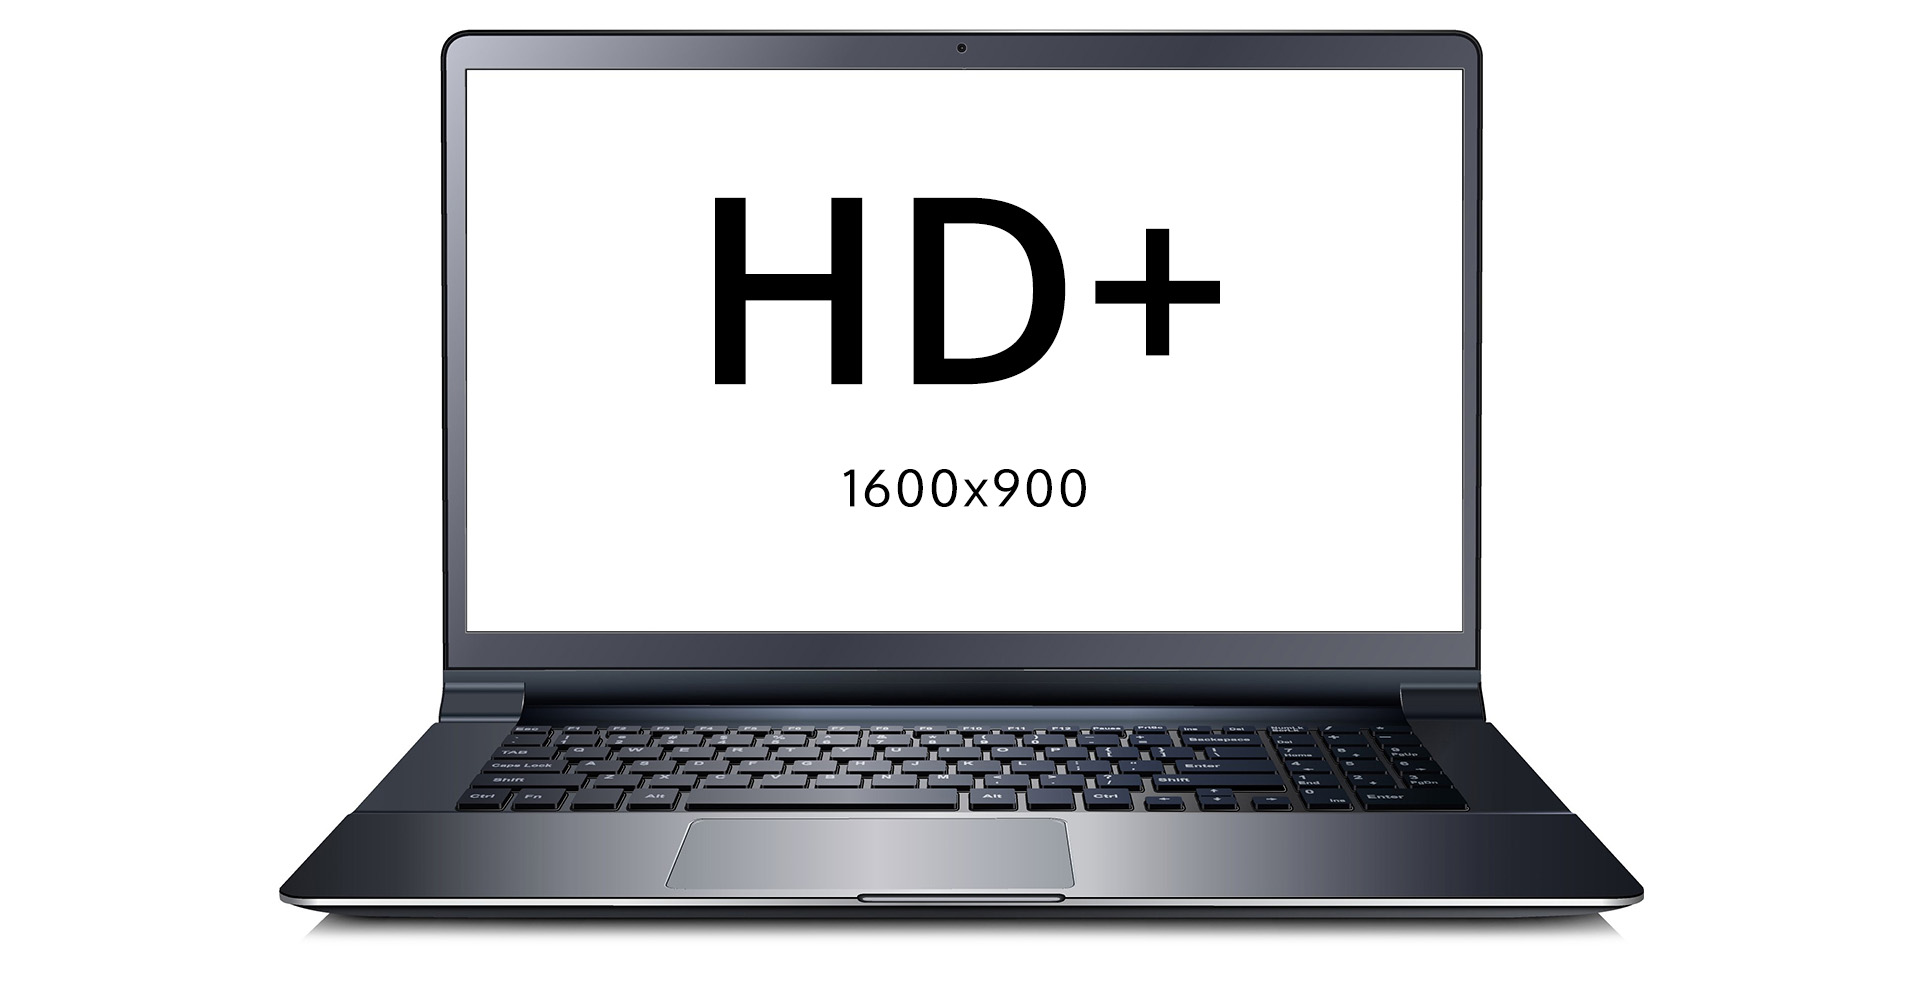 Lenovo ThinkPad T450s i5-5300U 8GB 256GB Win10 PRO HD+ 1600x900 raiška